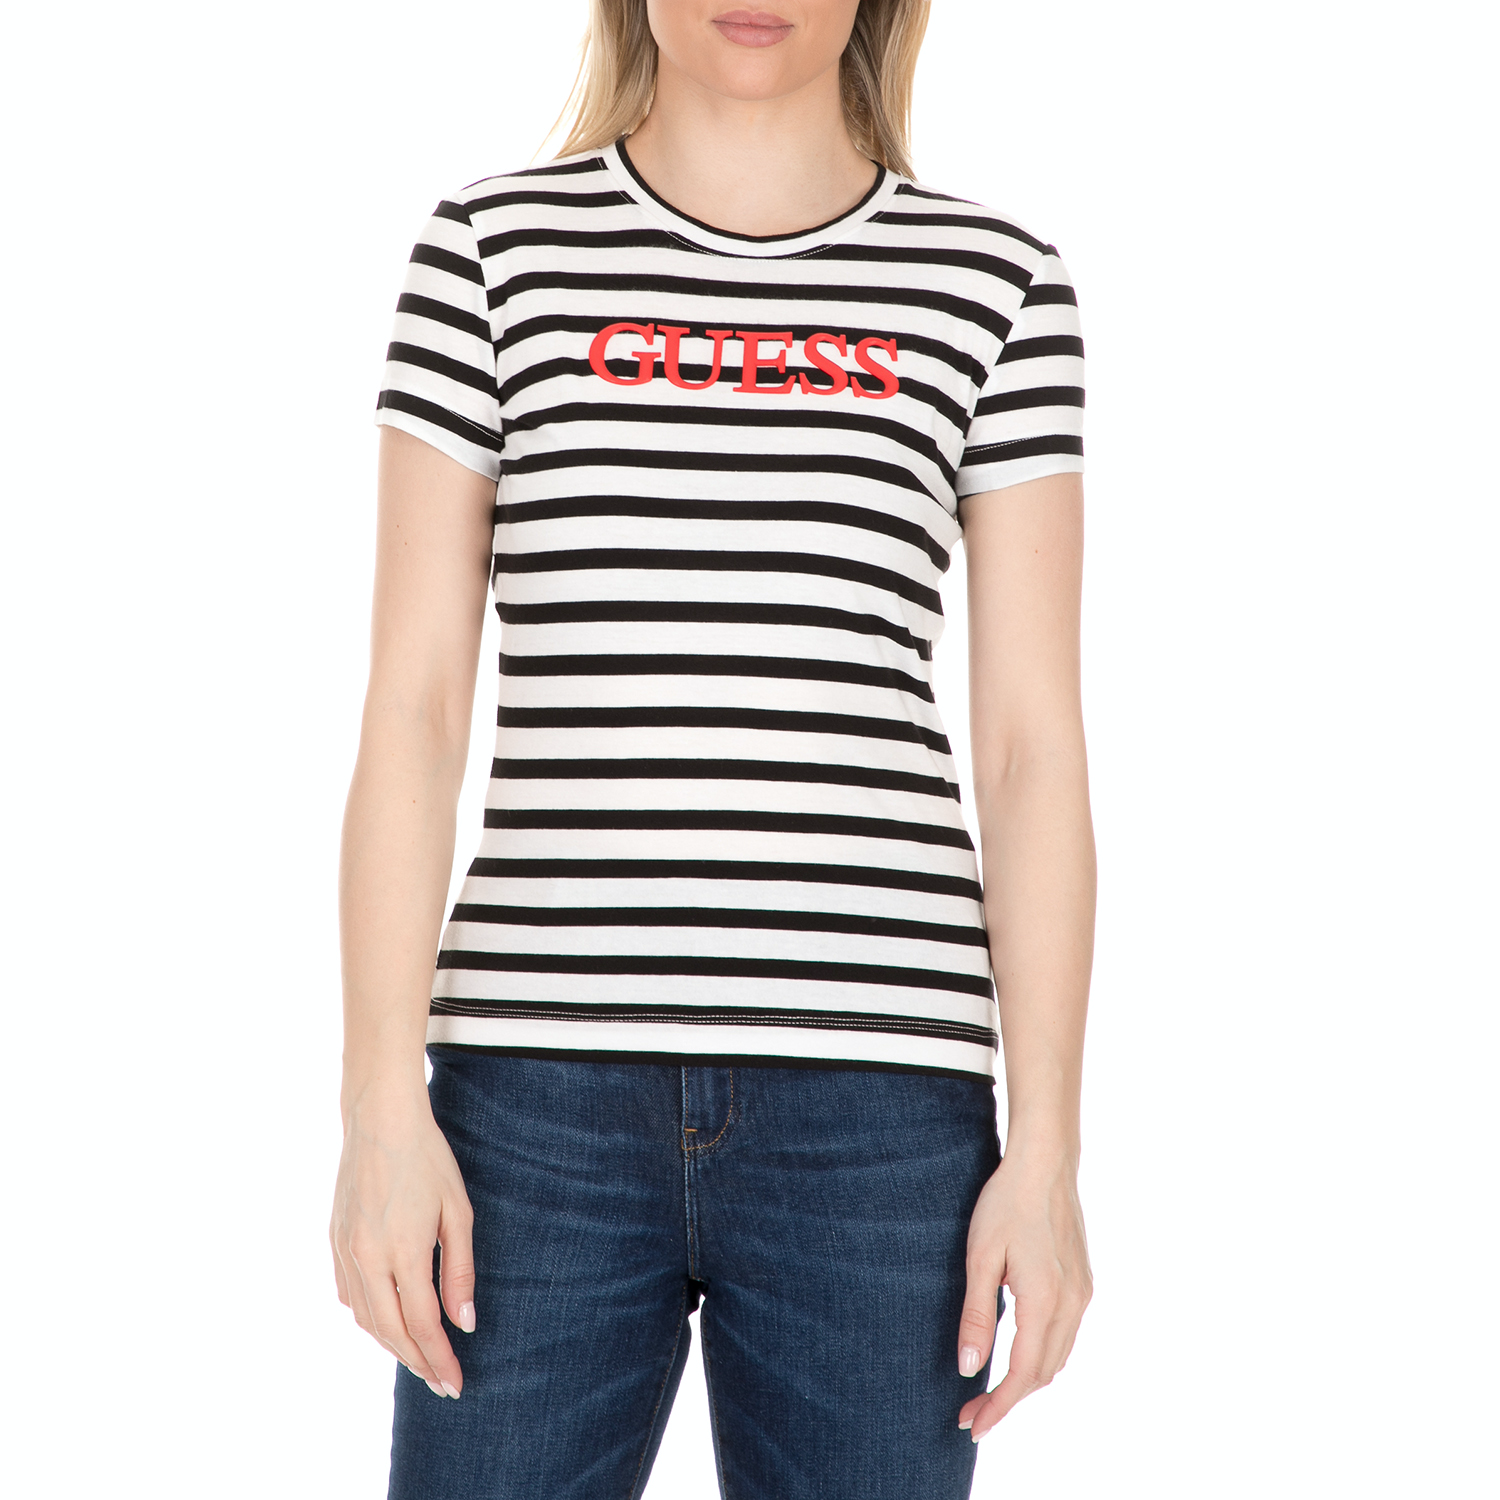 Γυναικεία/Ρούχα/Μπλούζες/Κοντομάνικες GUESS - Γυναικείο t-shirt με στάμπα GUESS ριγέ